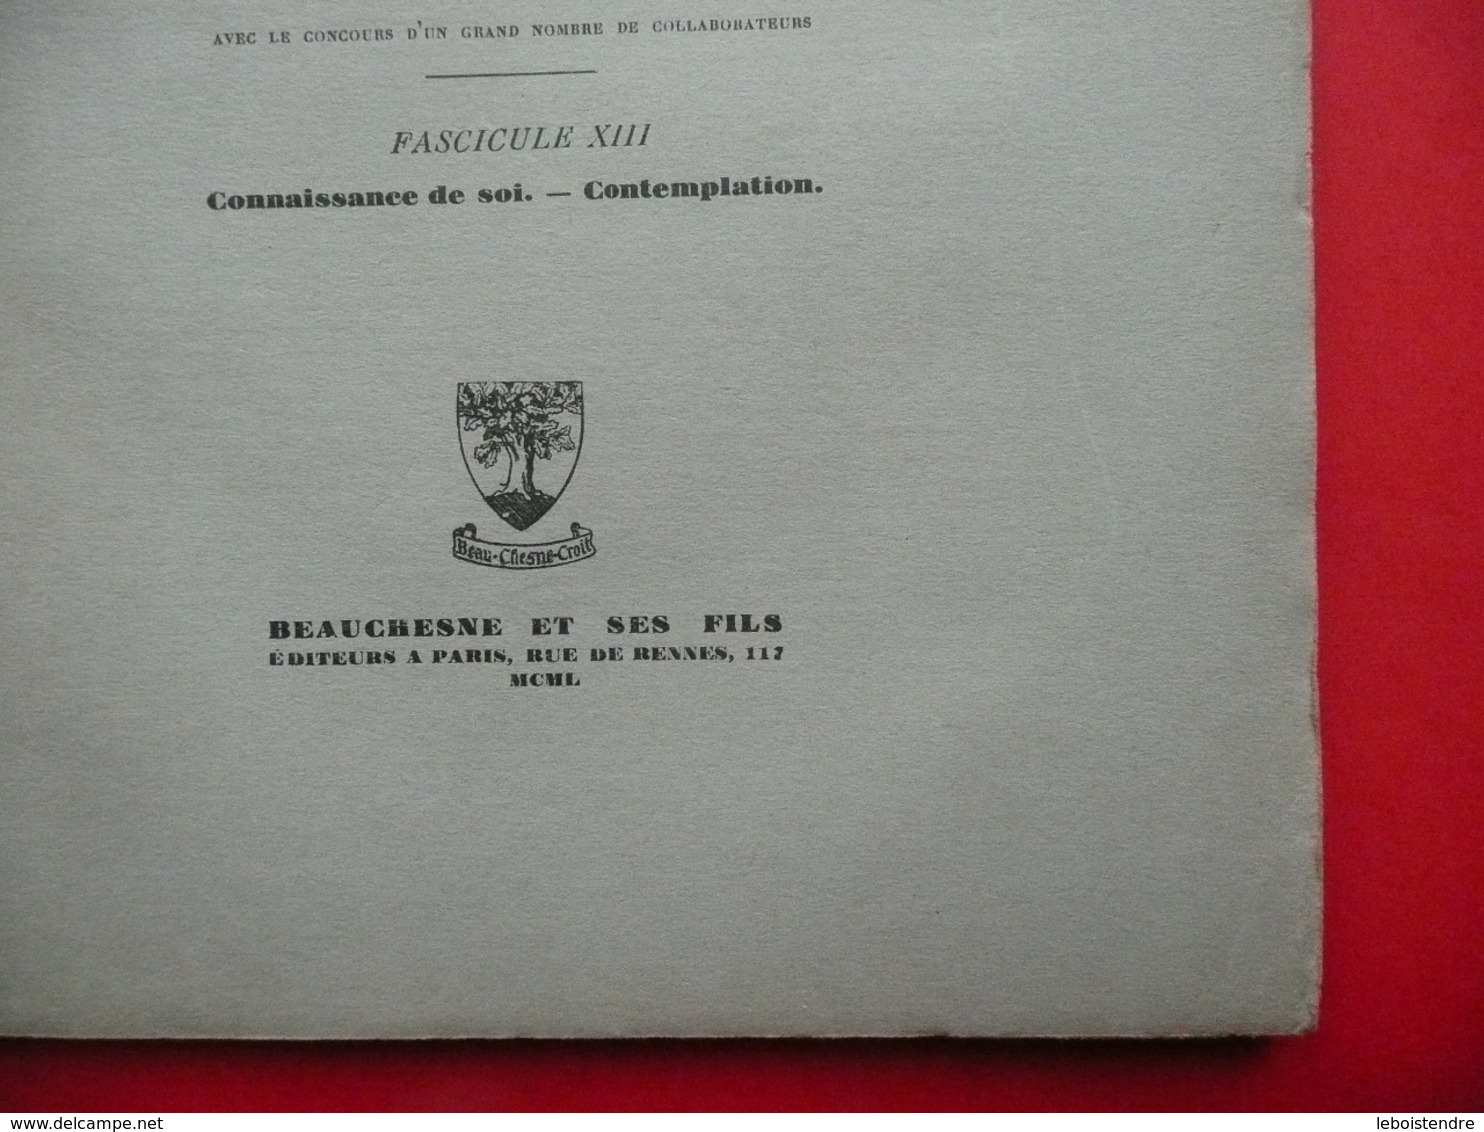 DICTIONNAIRE DE SPIRITUALITE FASCICULE XIII  ASCETIQUE ET MYSTIQUE DOCTRINE ET HISTOIRE 1950 VILLER CAVALLERA GUIBERT - Dictionnaires